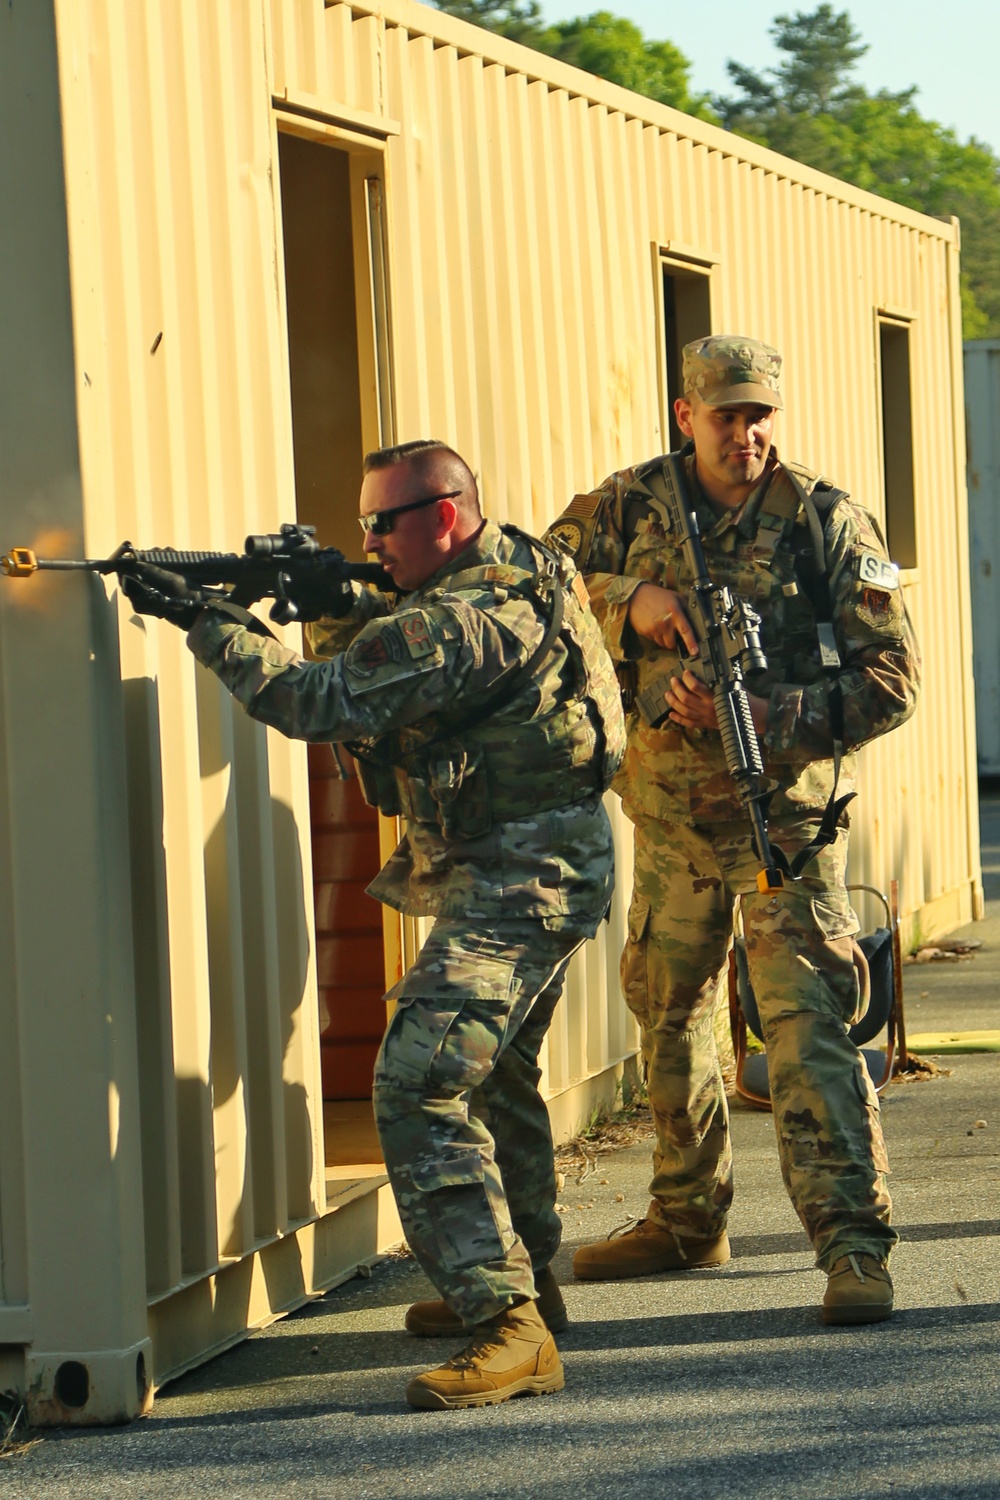 Defenders hone ground combat skills through joint training